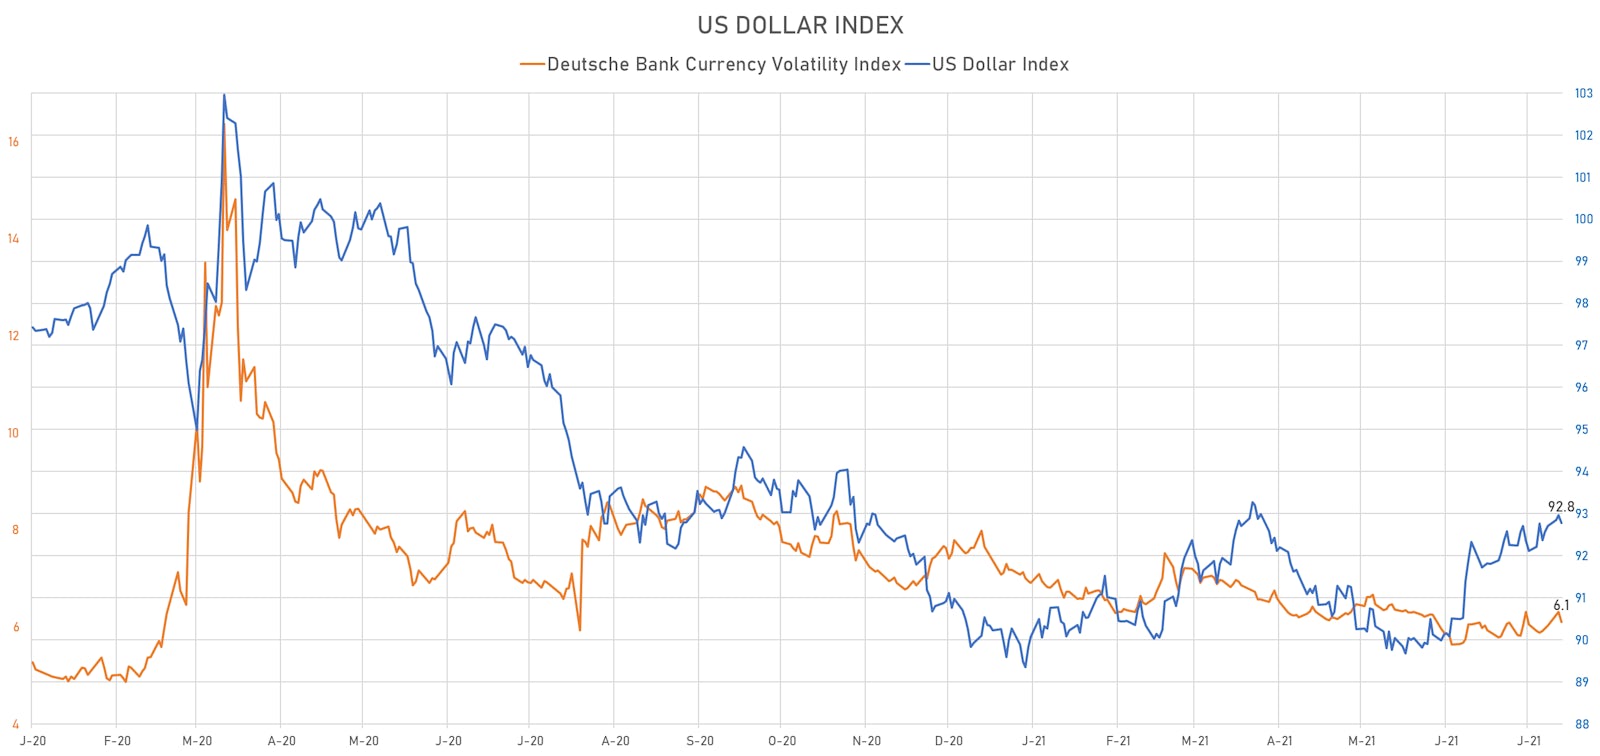 US Dollar Index & Deutsche Bank Currency Volatility Index | Sources: ϕpost, Refinitiv data